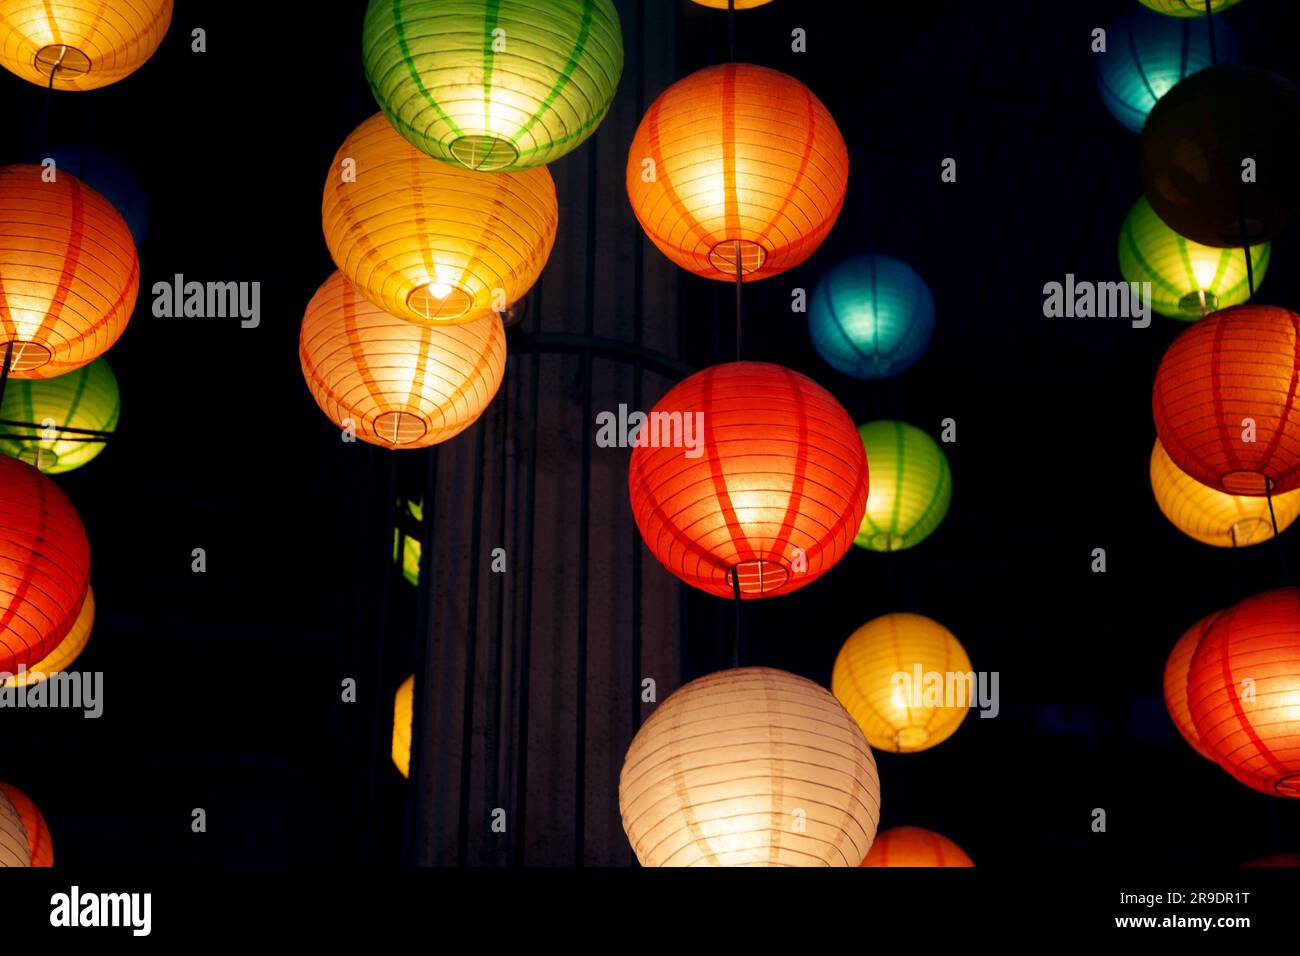 Molte lanterne di carta cinesi rotonde appese al buio. Molte decorazioni colorate e festose preparate per una celebrazione in stile orientale Foto Stock